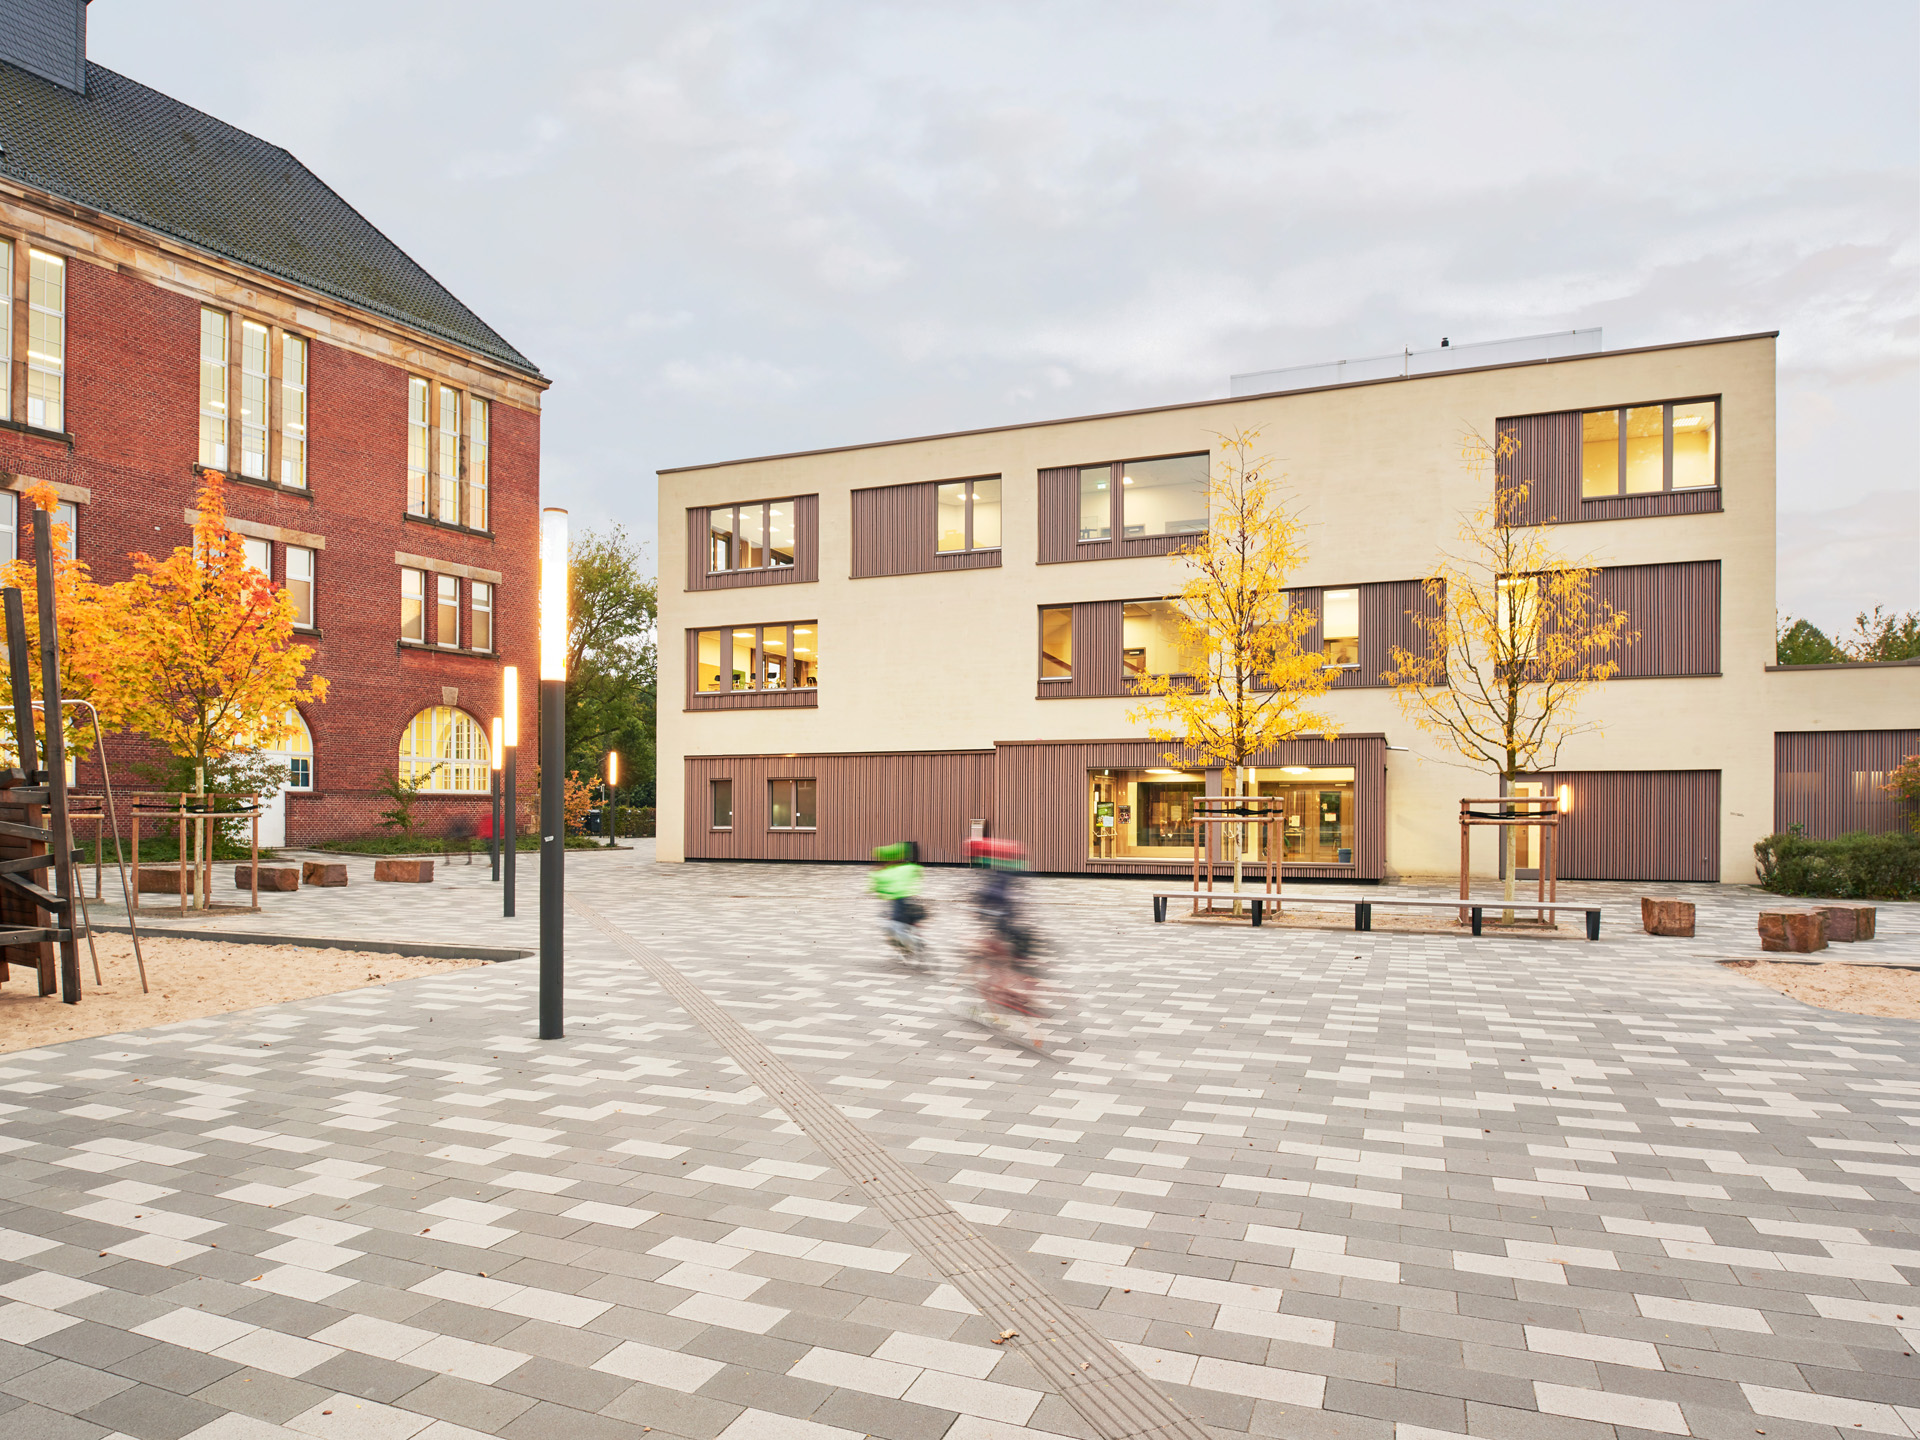  Architekturfoto: Schule am Leibnizplatz, gruppeomp architekten 